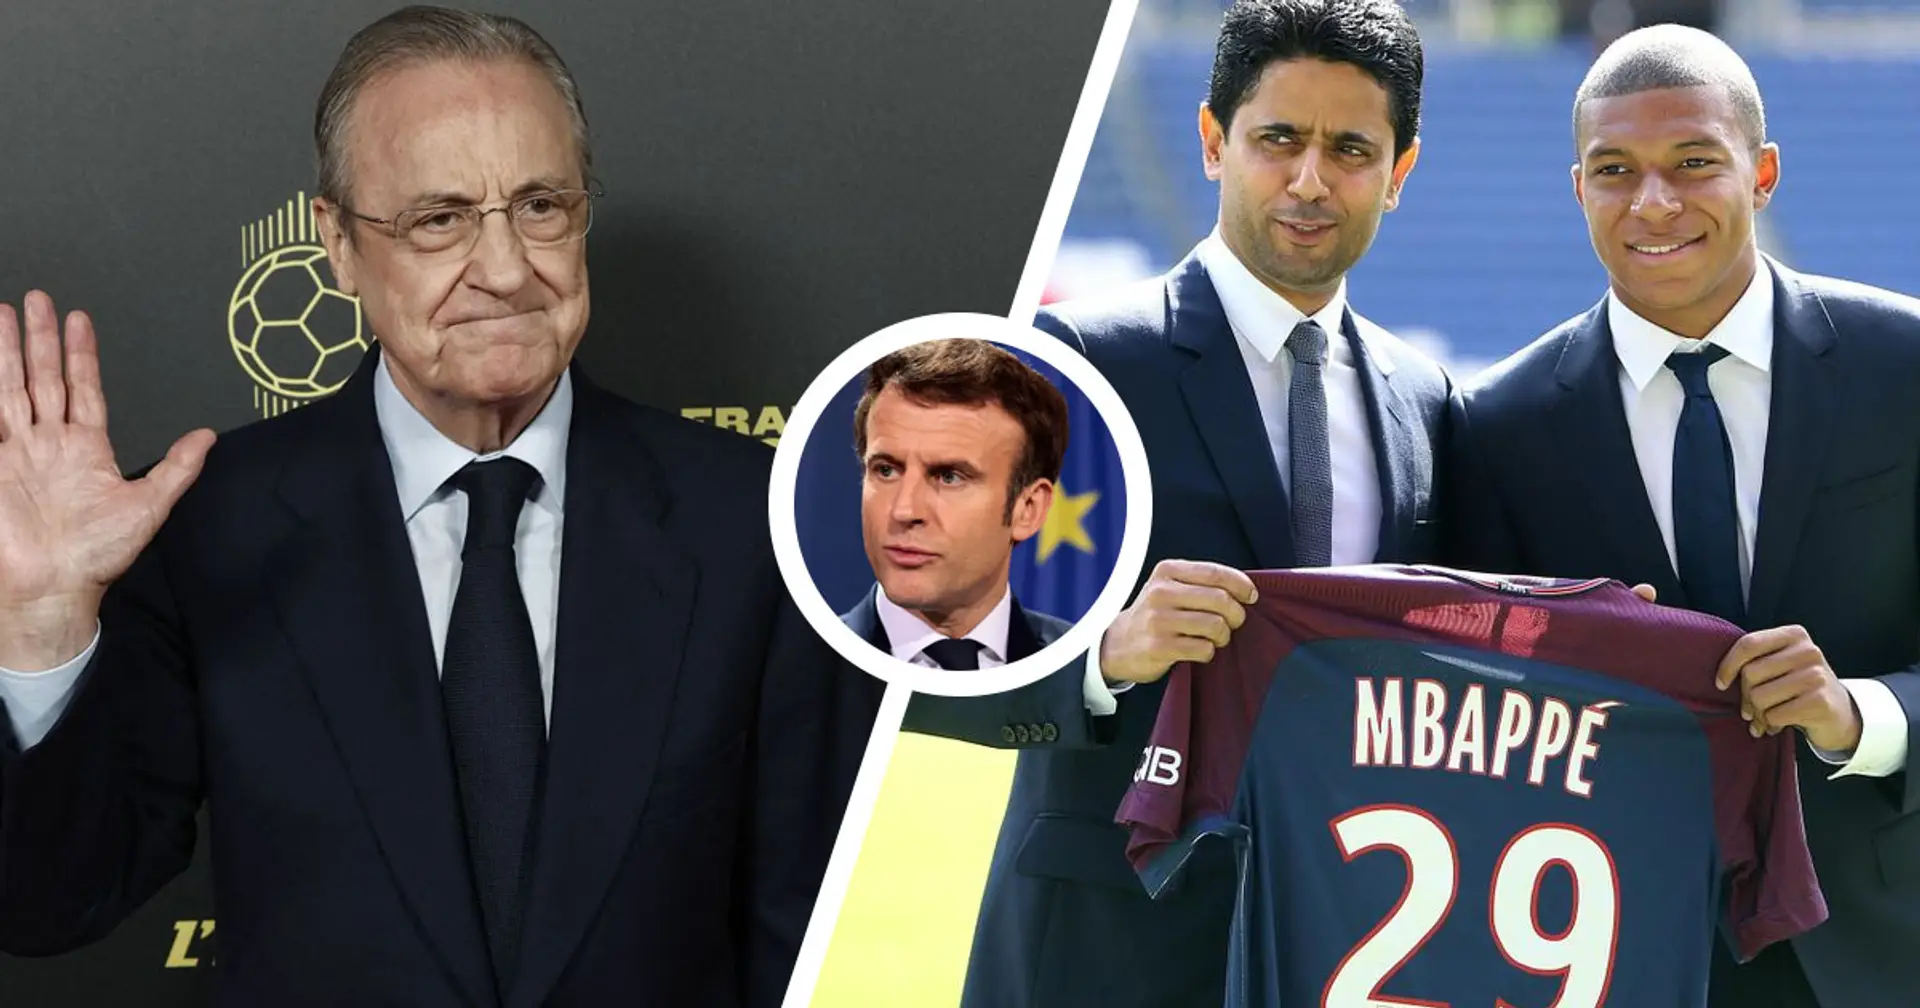 "Das ist ein Verdienst von mir": Frankreichs Präsident Macron bestätigt, dass er Mbappe geraten hat, einen Wechsel zu Real Madrid abzulehnen